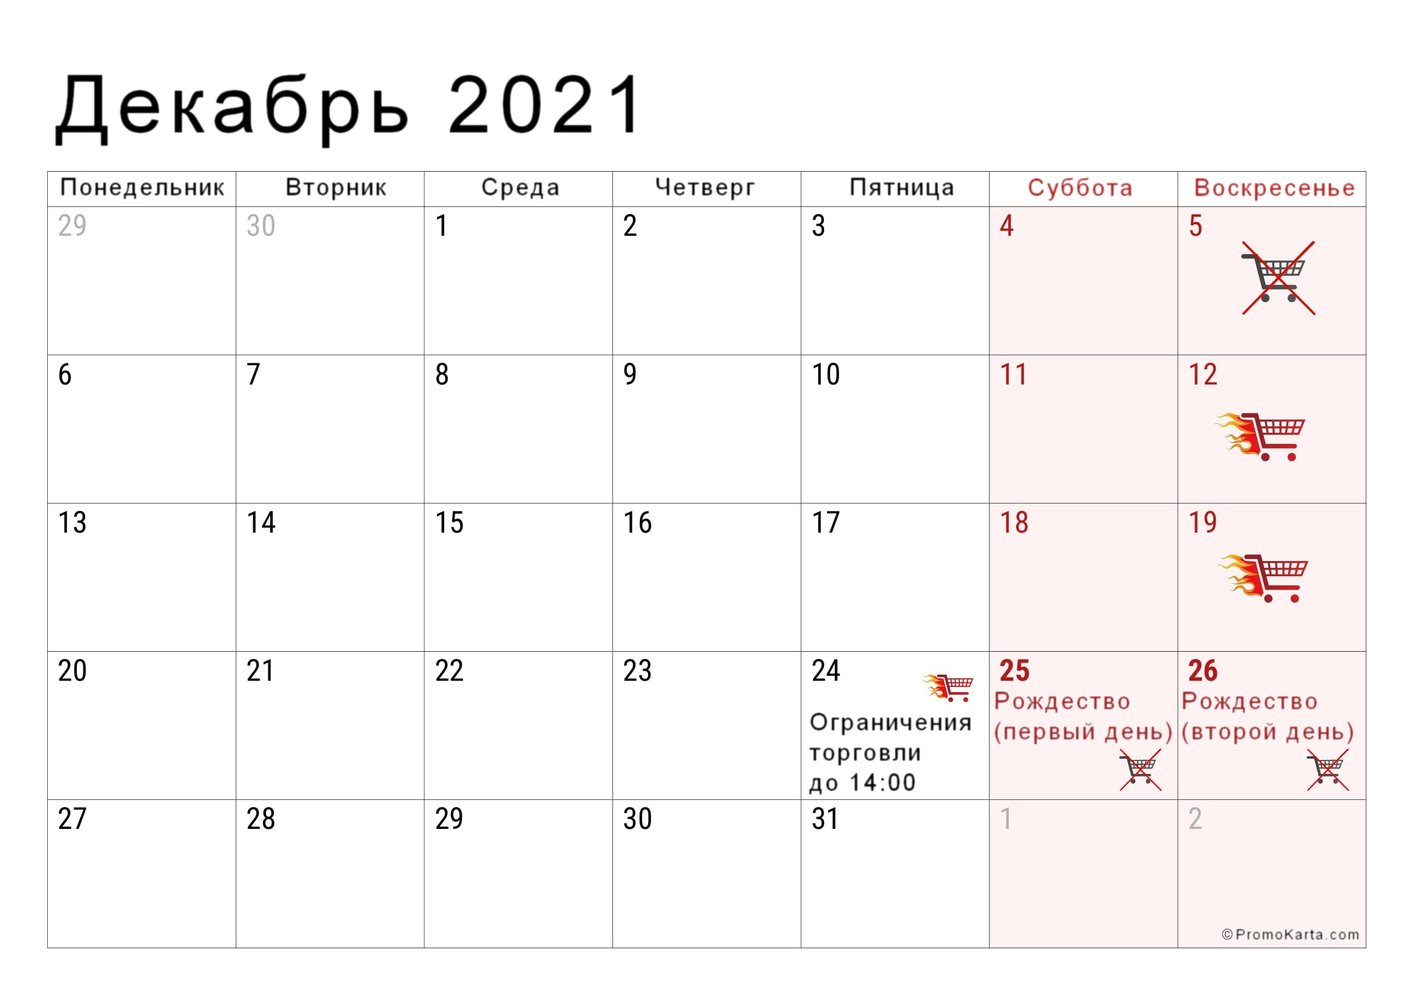 Выходные и неторговые дни в Польше в декабре 2021 года